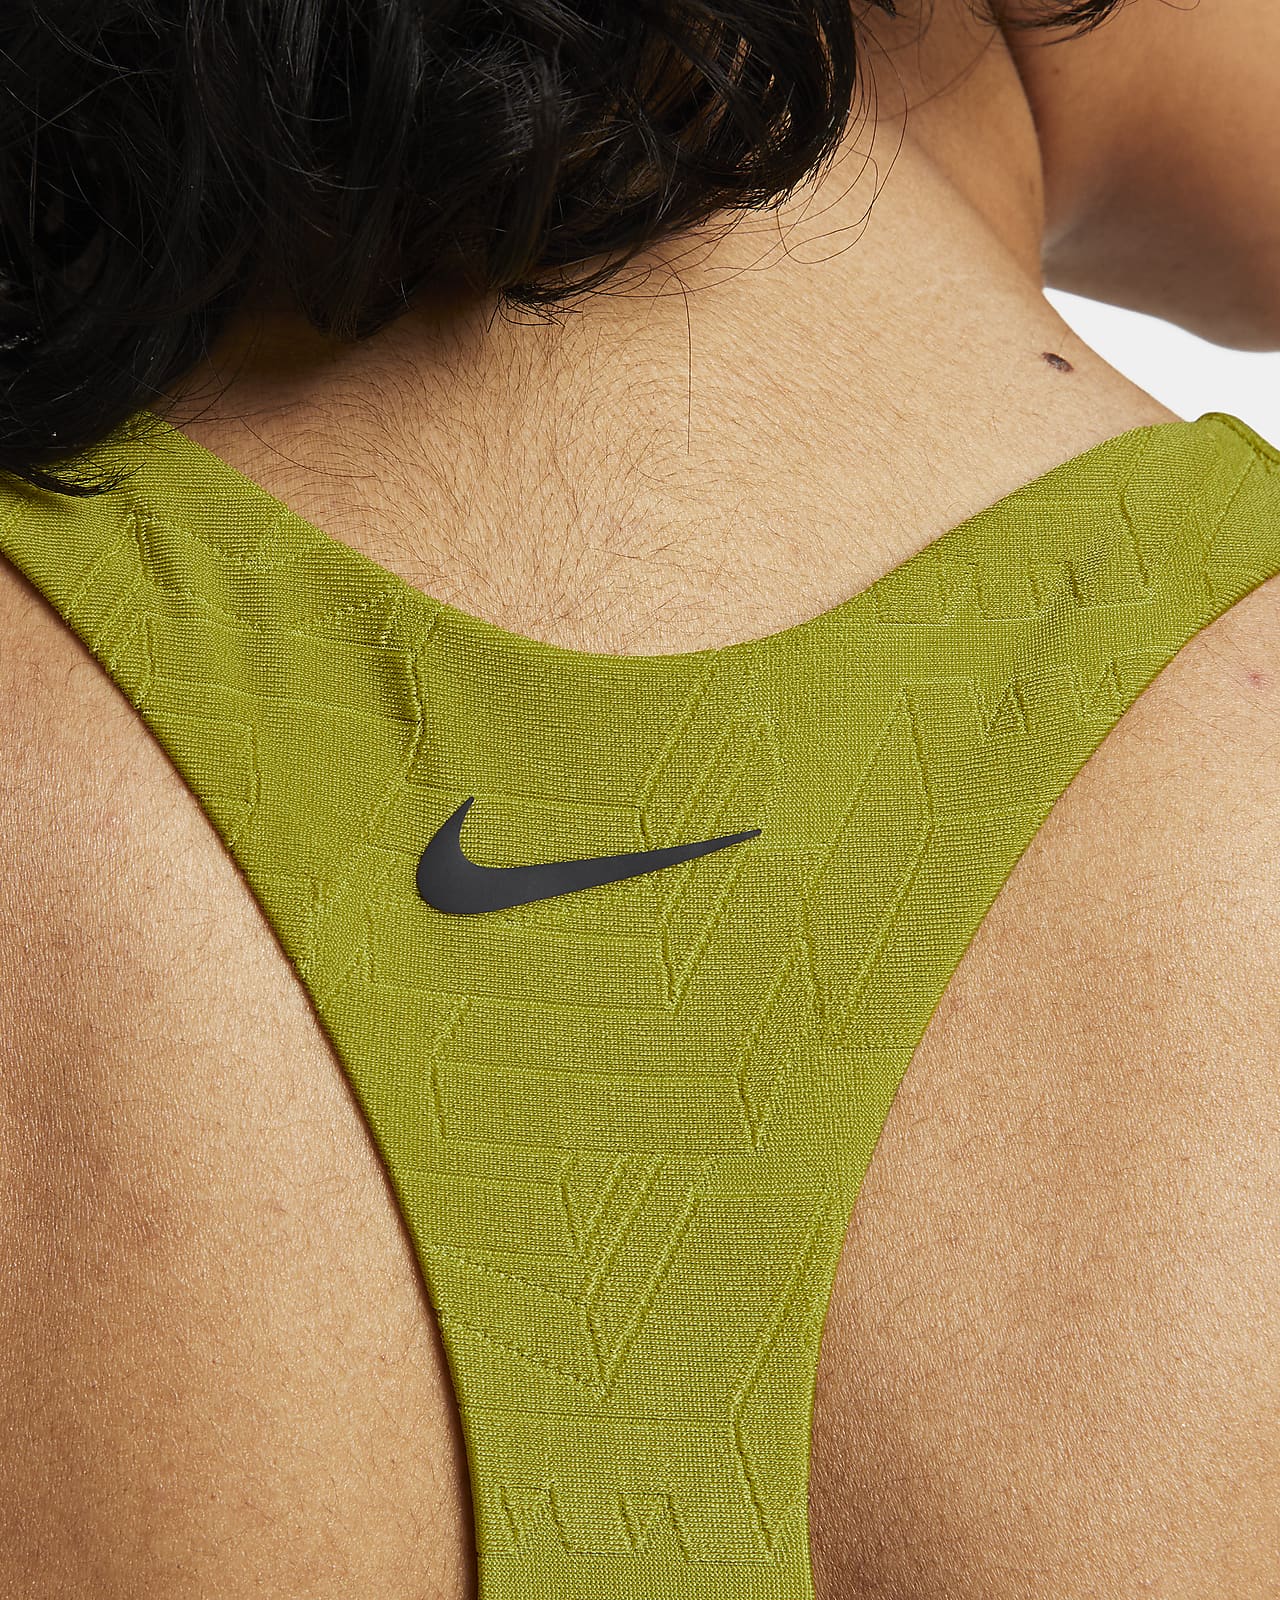 Nike Women's Bikini Swim Top.